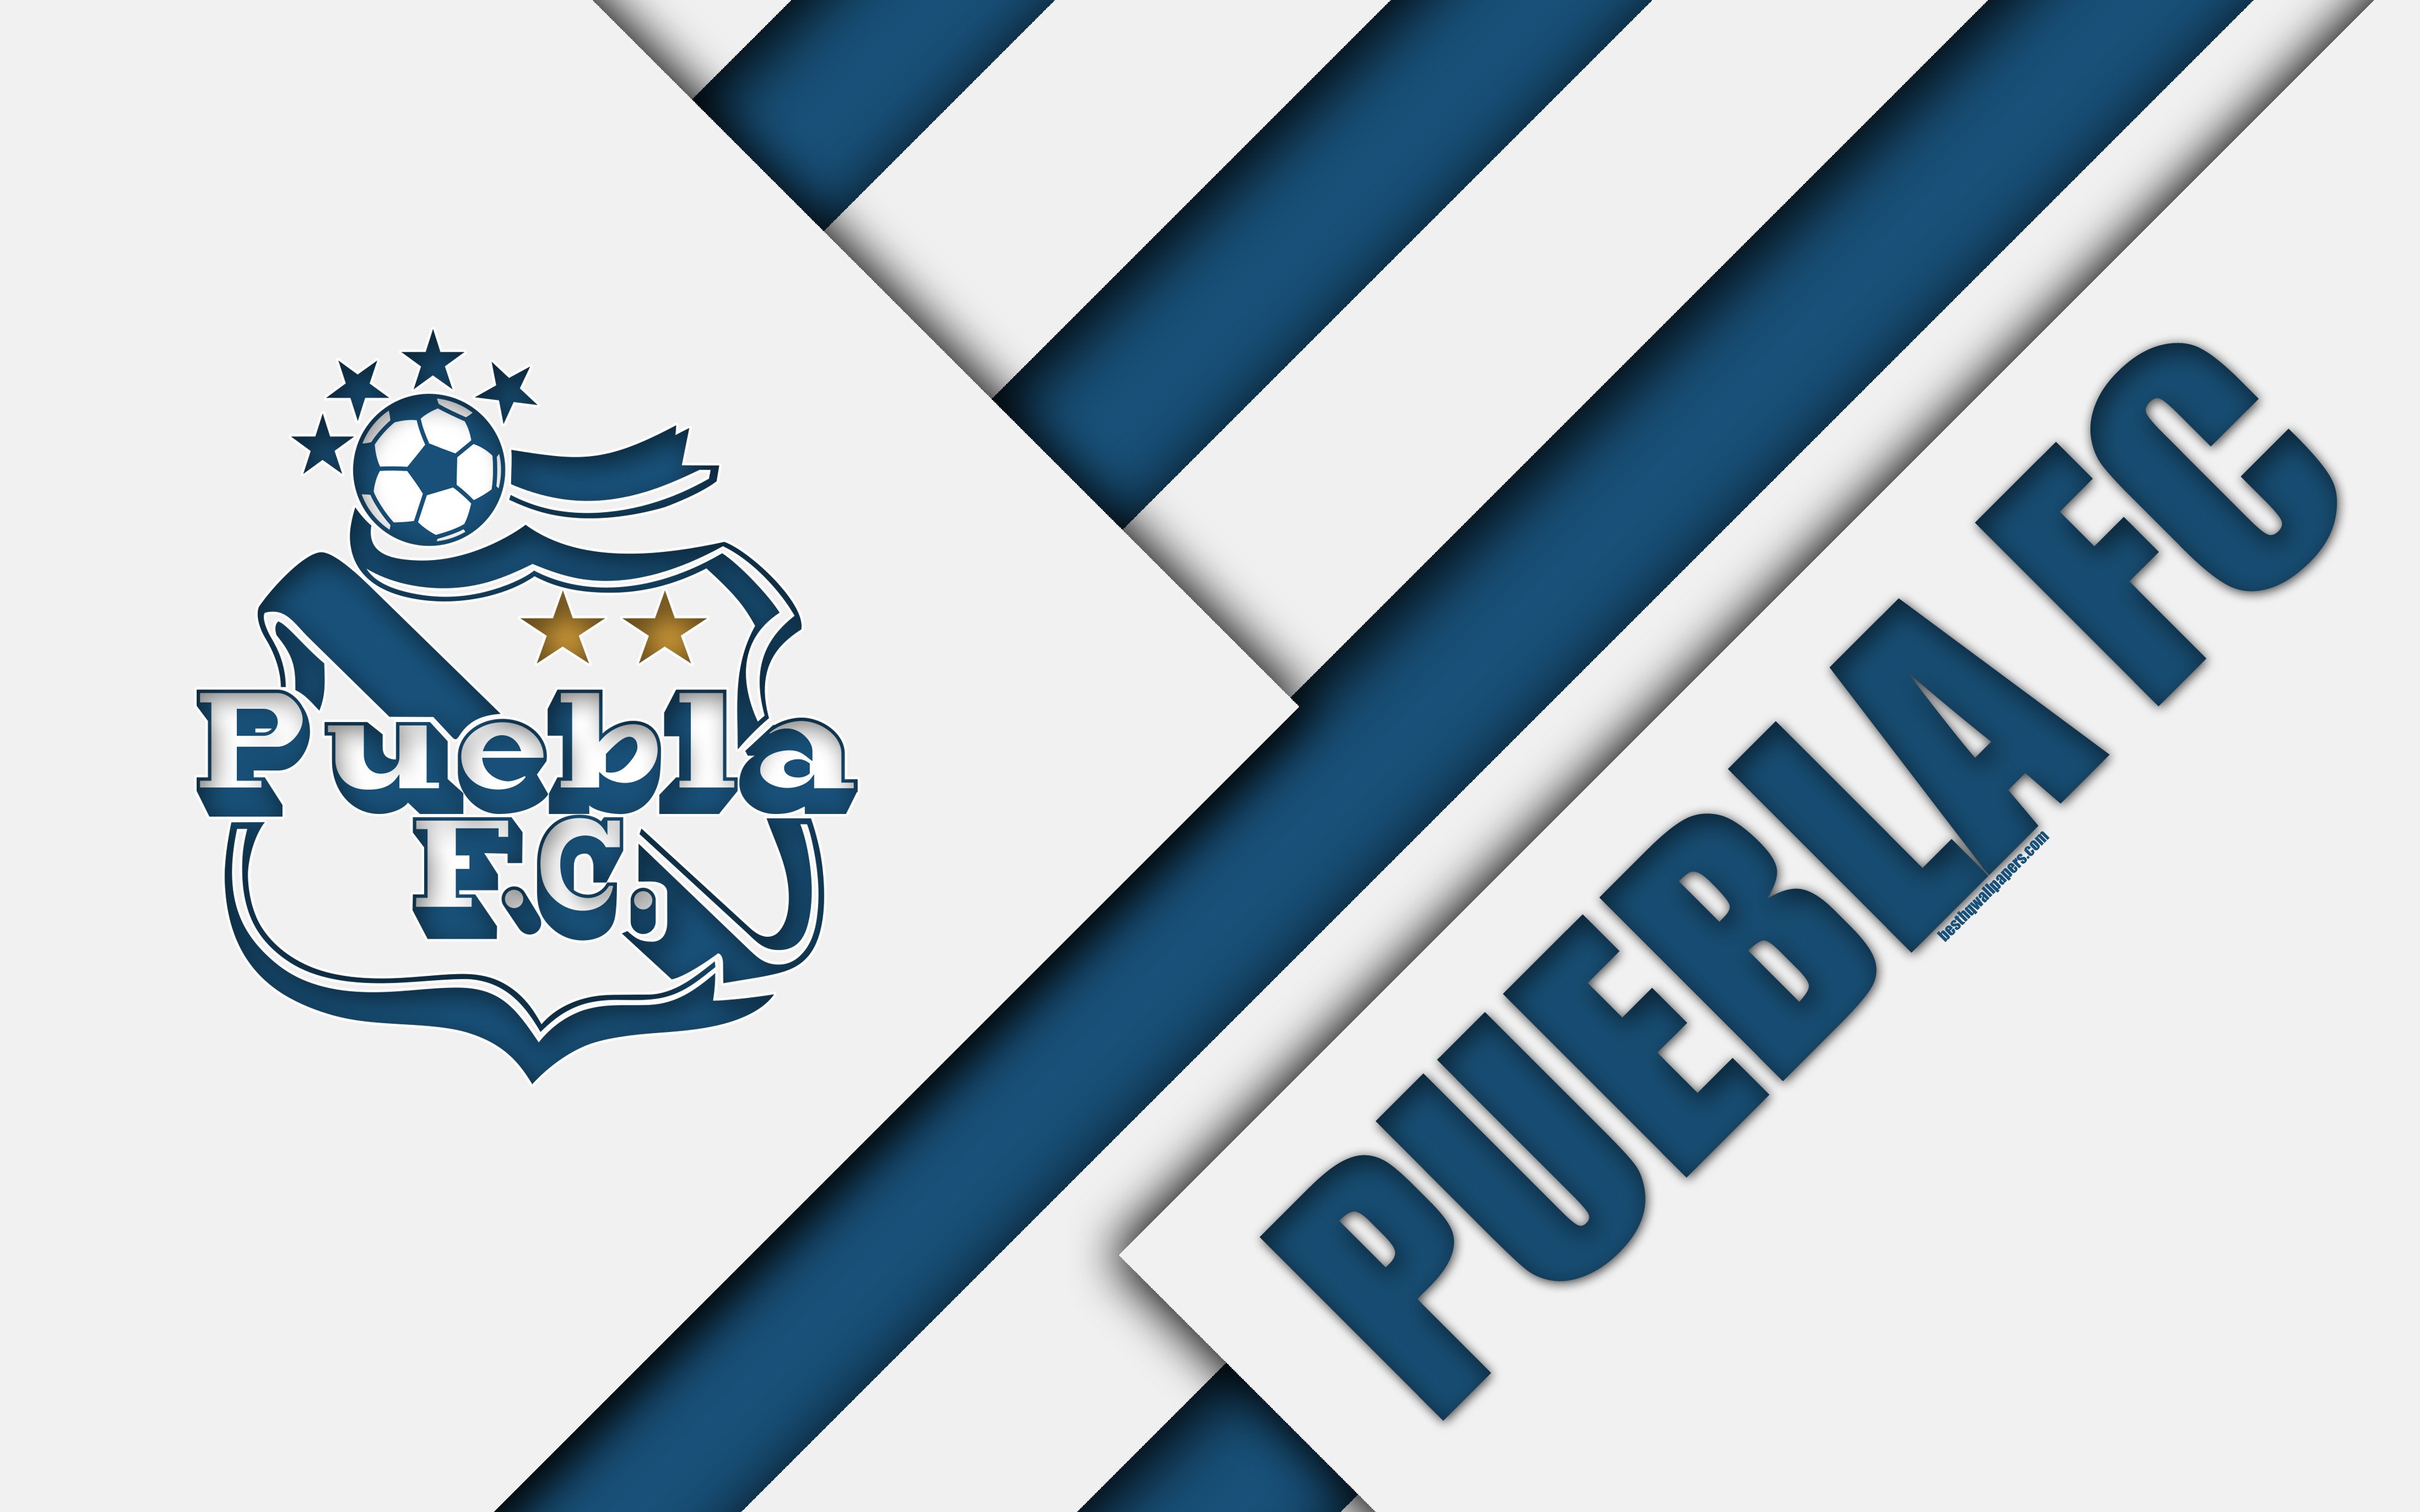 Download wallpaper Puebla FC, 4k, Mexican Football Club, material